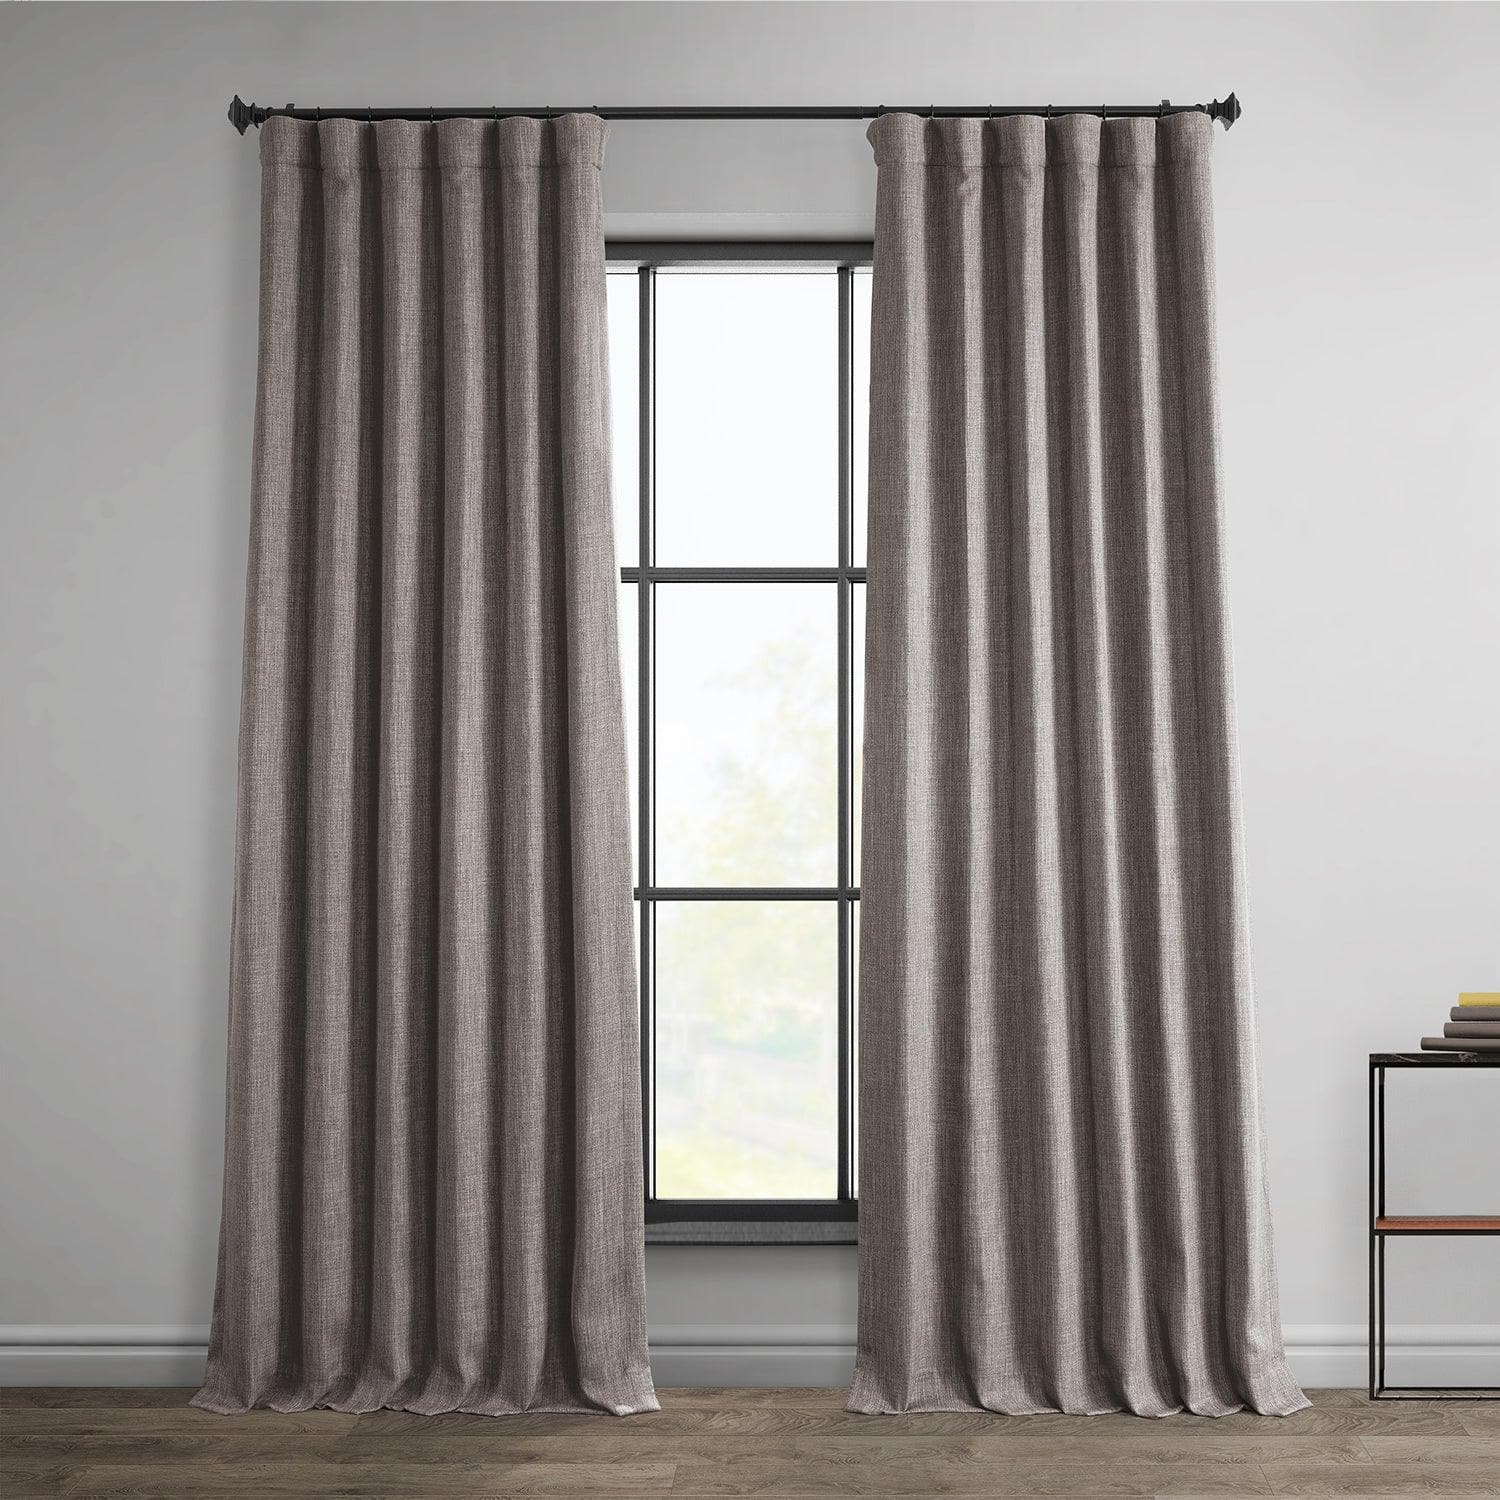 Mink Textured Faux Linen Room Darkening Curtain